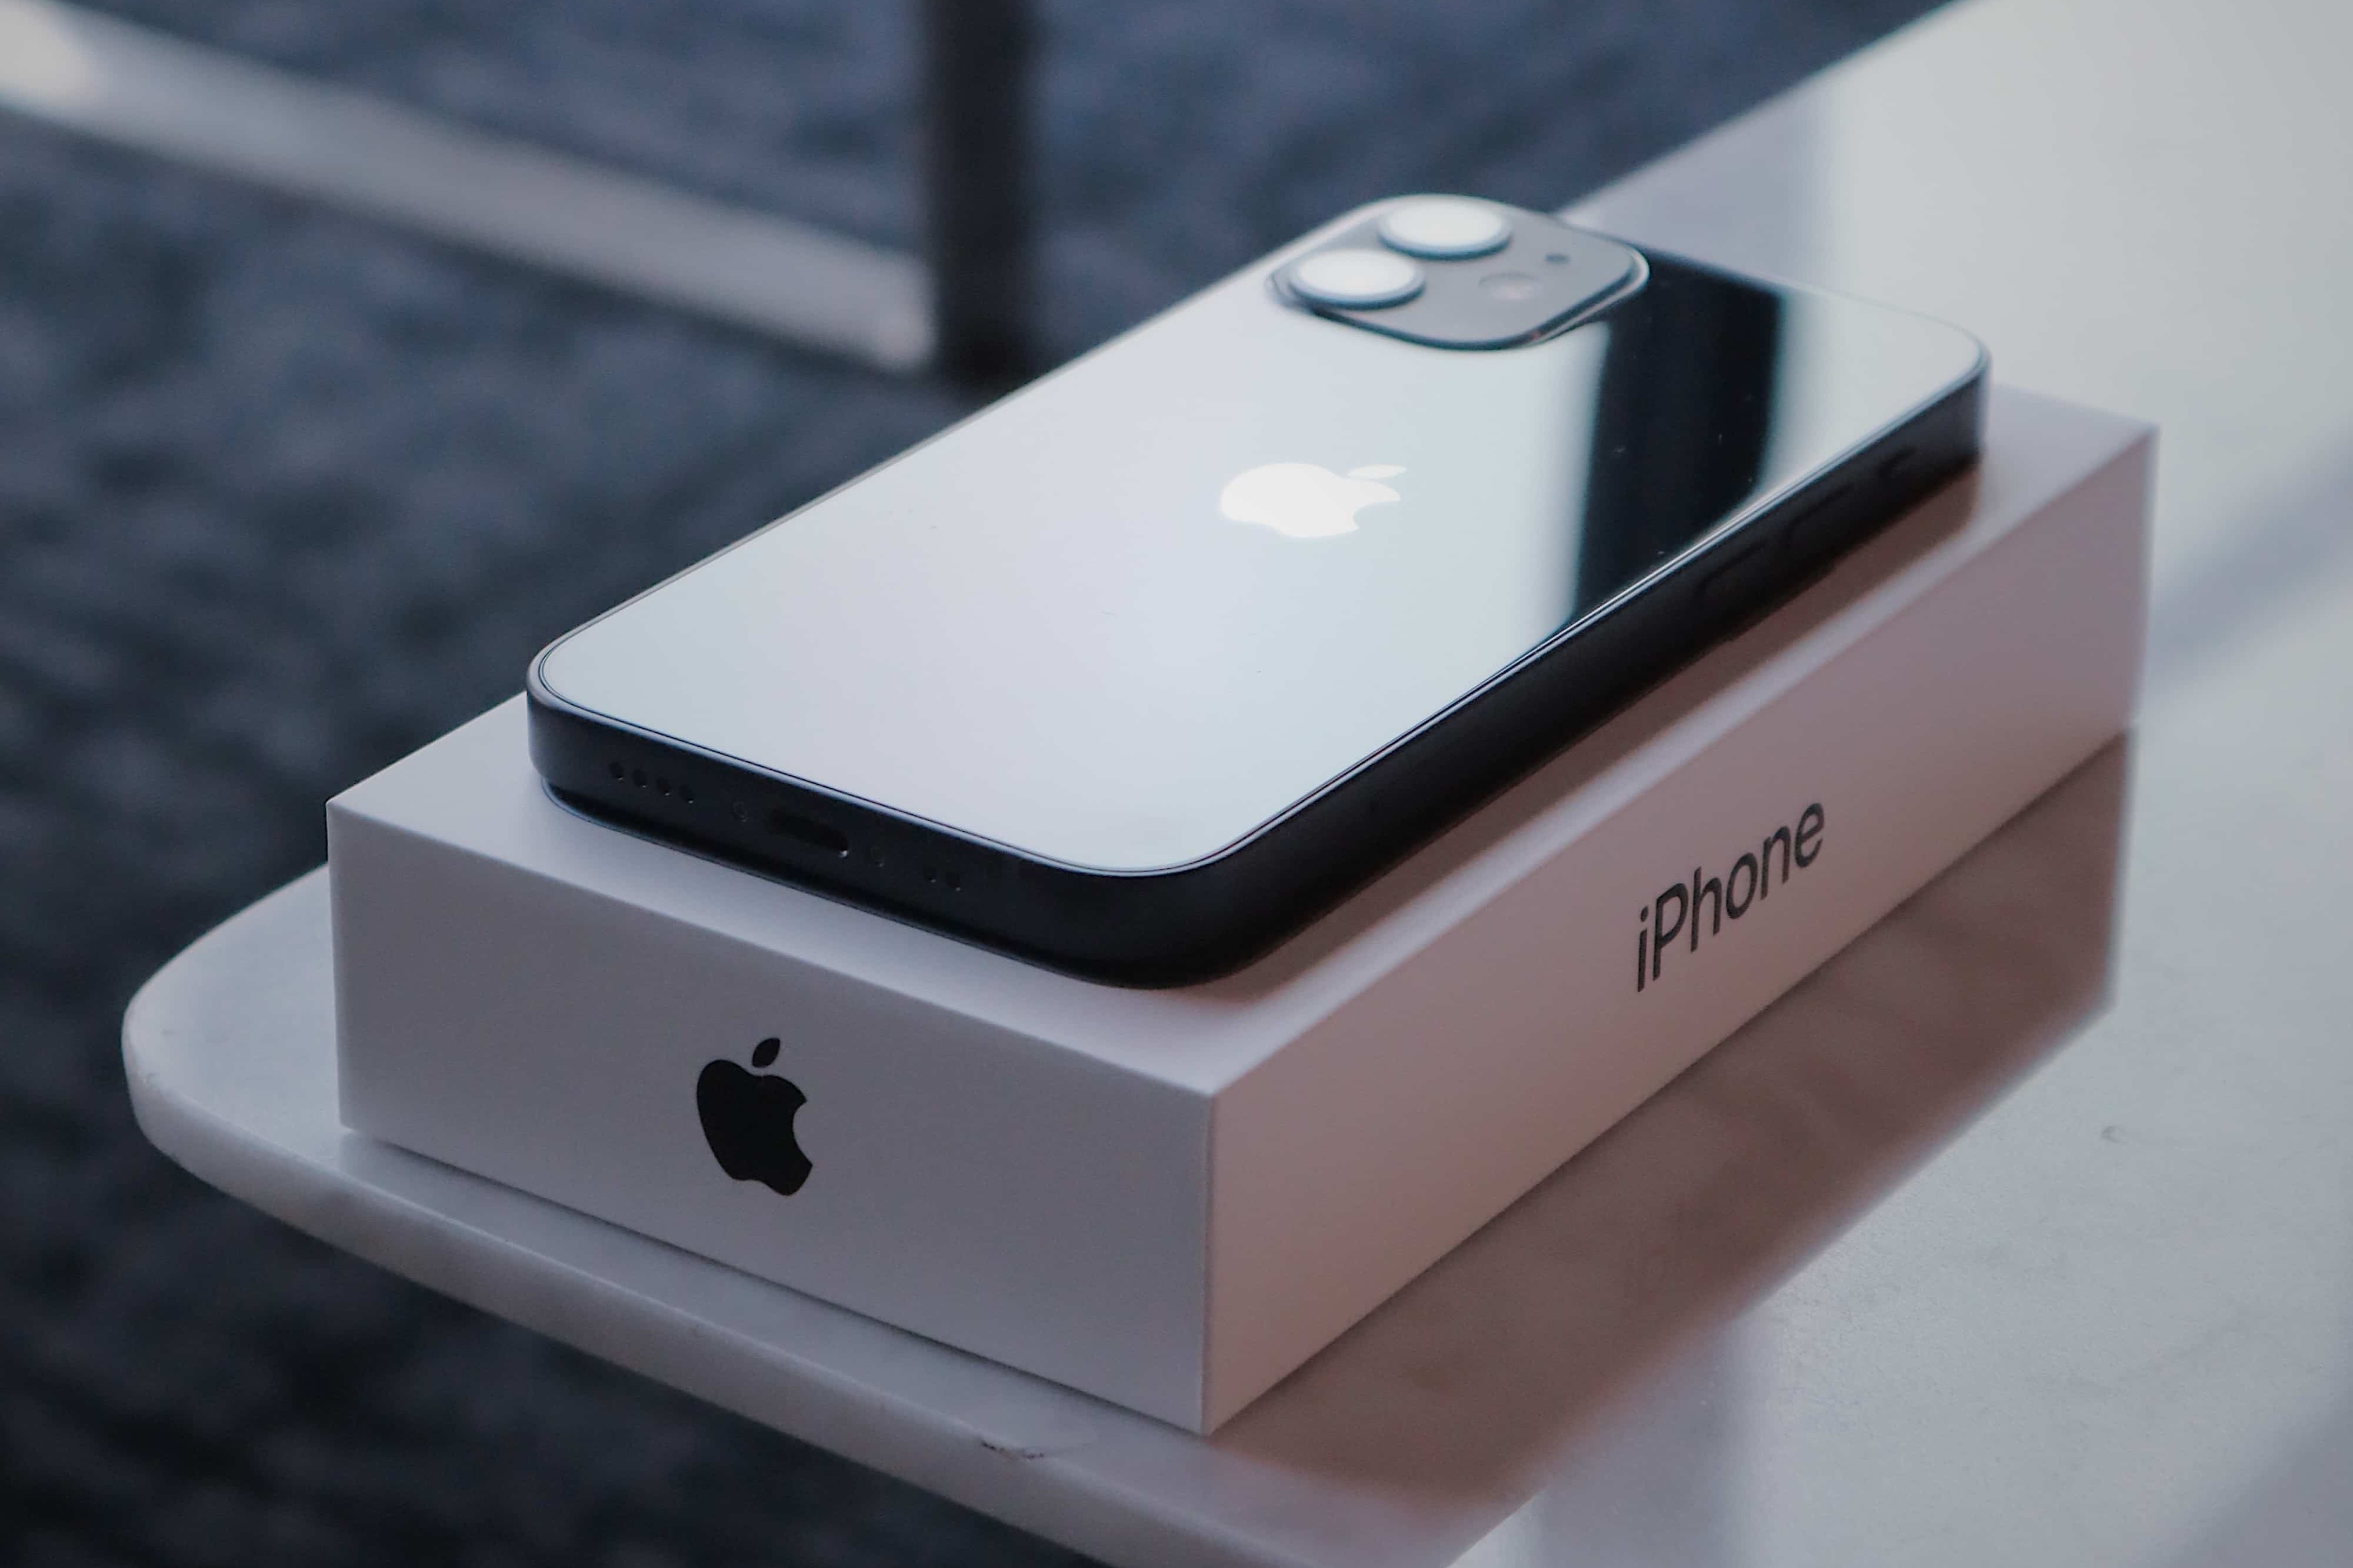 指測出電磁波輻射值超標 法國要求停售iPhone 12